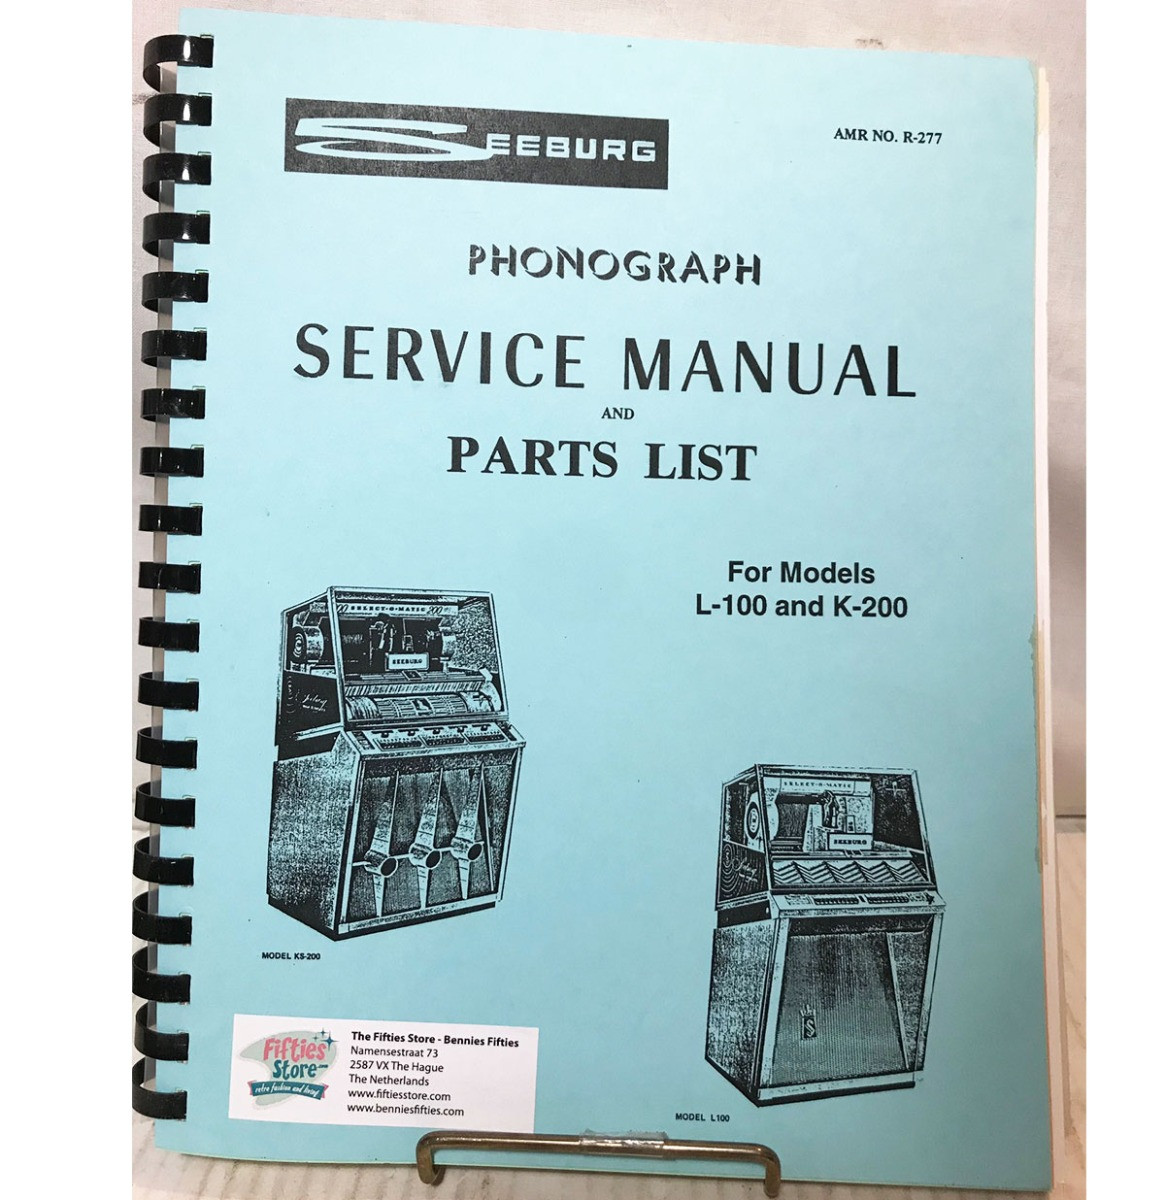 Service Manual & Parts List Seeburg Jukebox Model L-100 & K-200